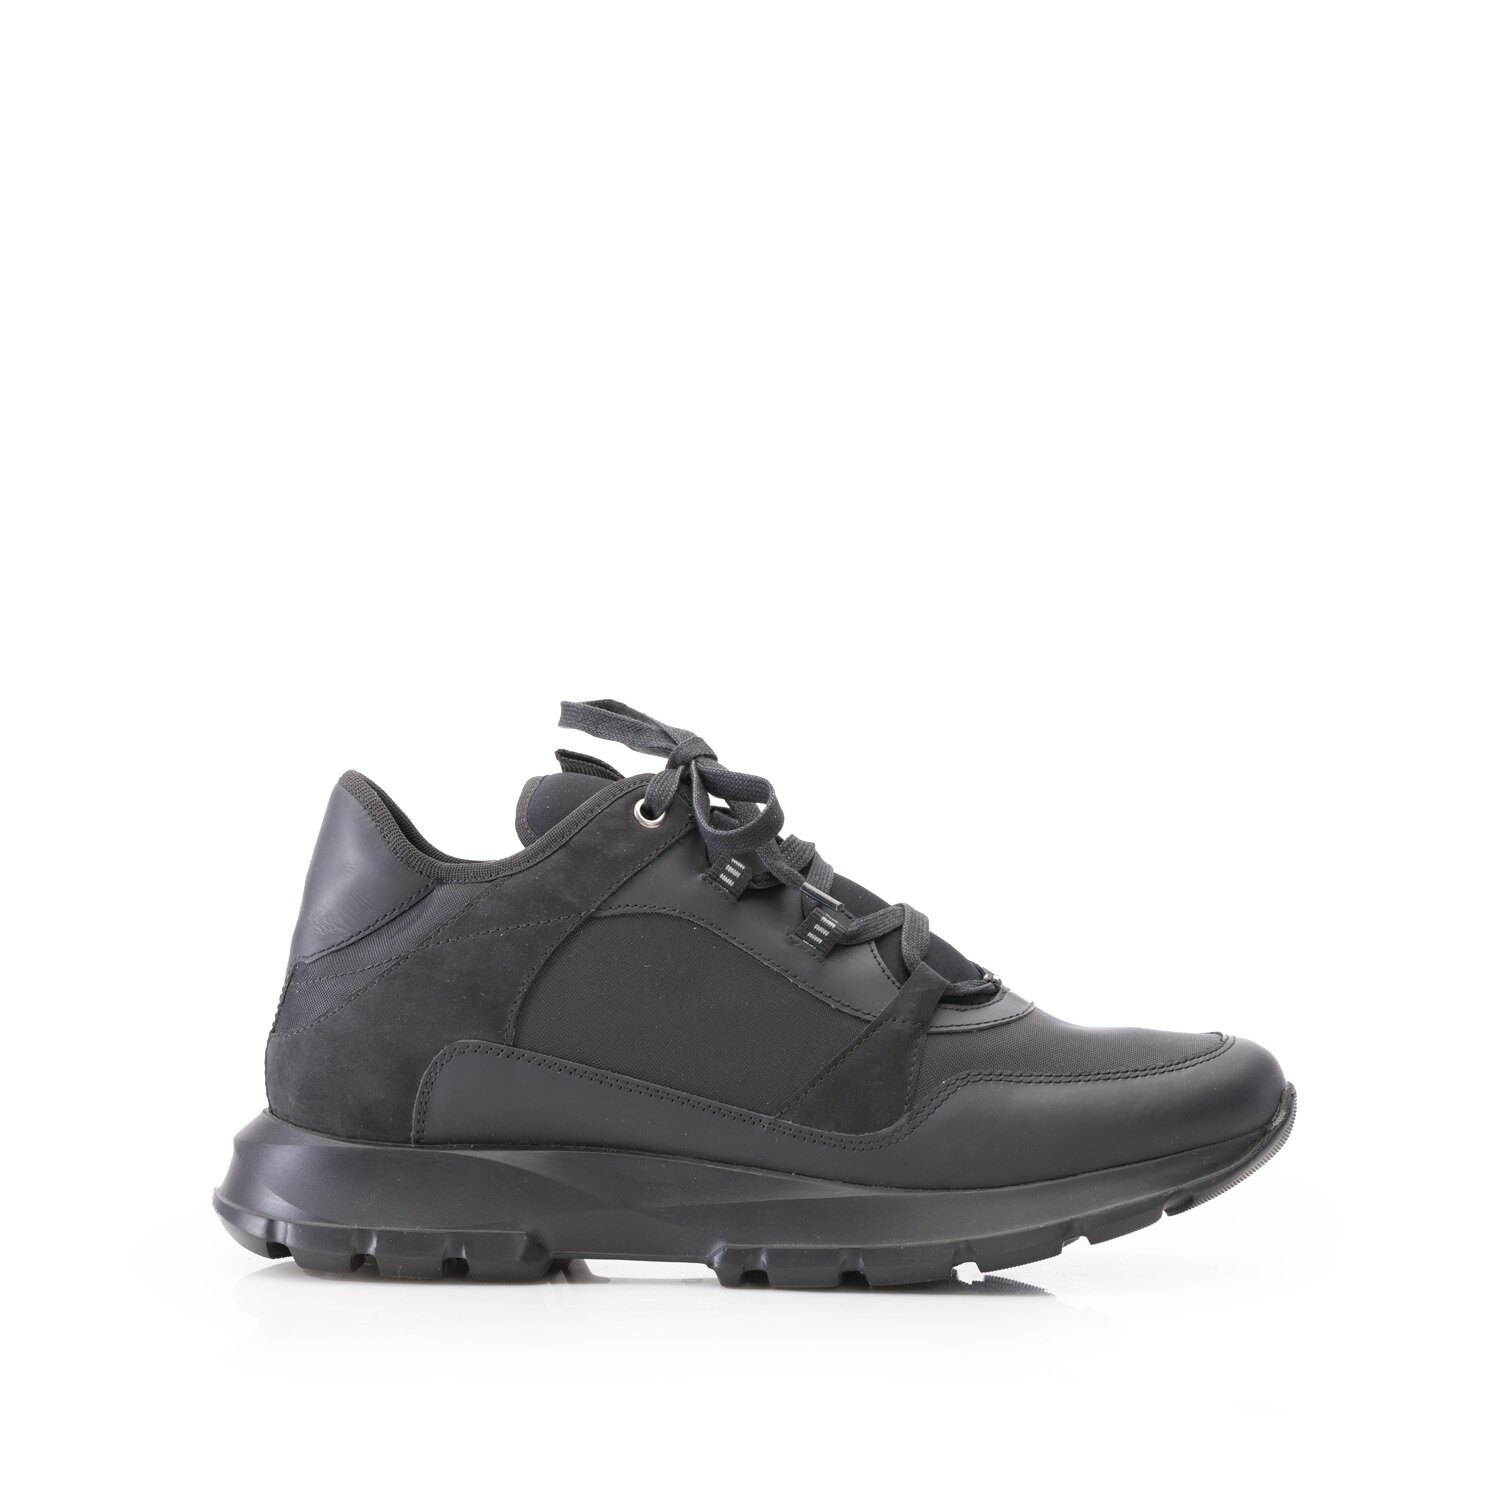 Pantofi sport bărbați din piele naturală, Leofex - Mostră 744 Negru Box